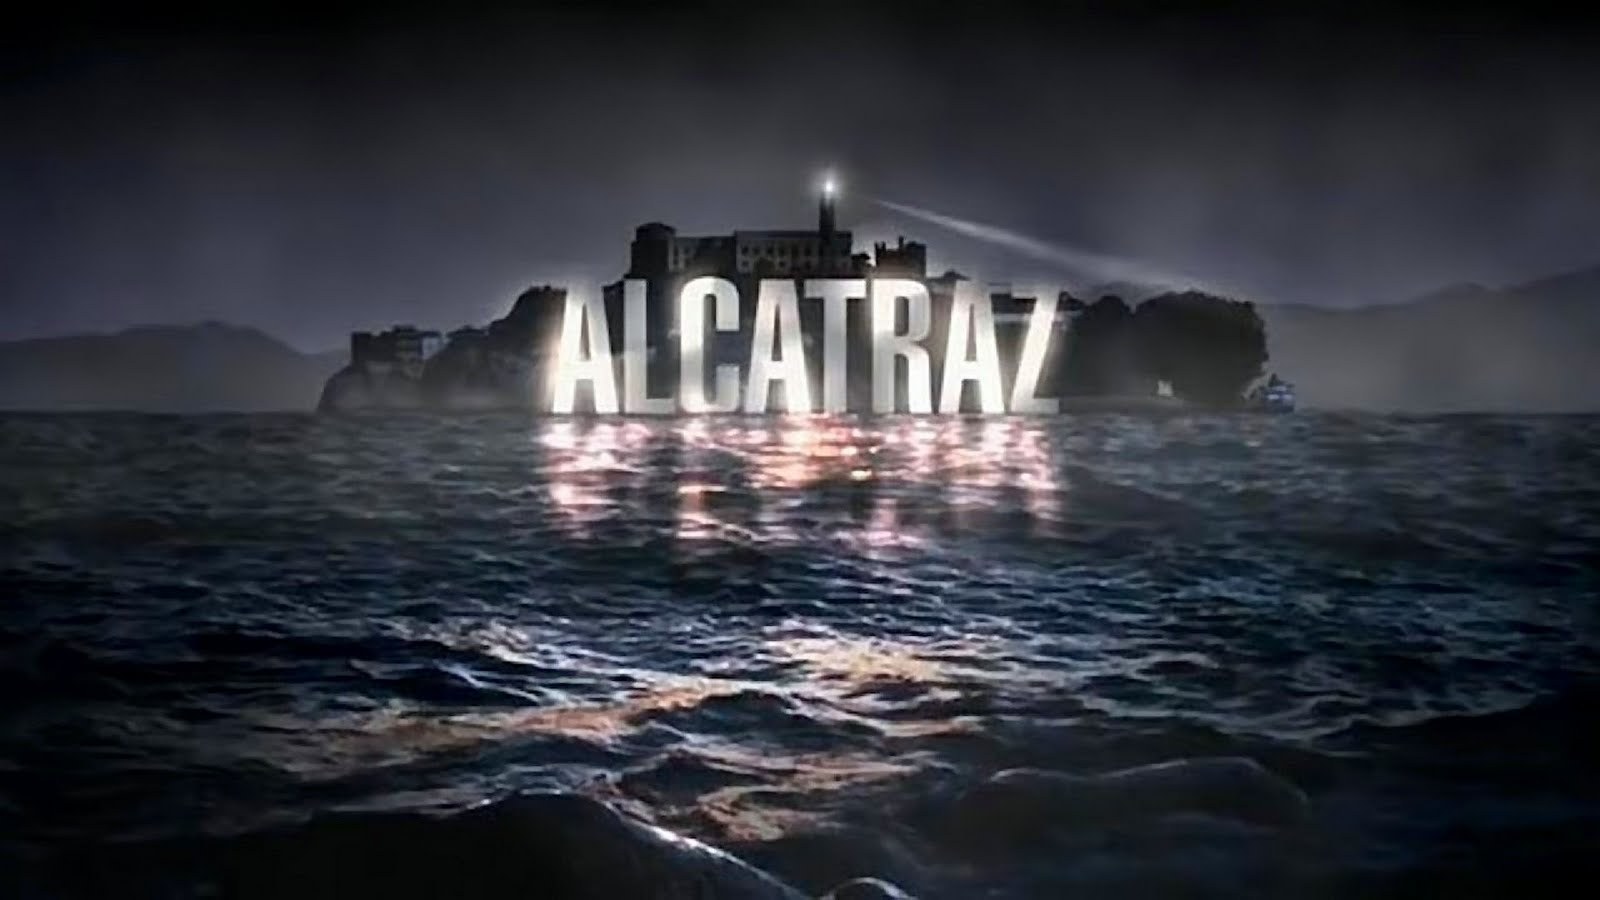 La isla de Alcatraz es una pequea isla ubicada en el centro de la